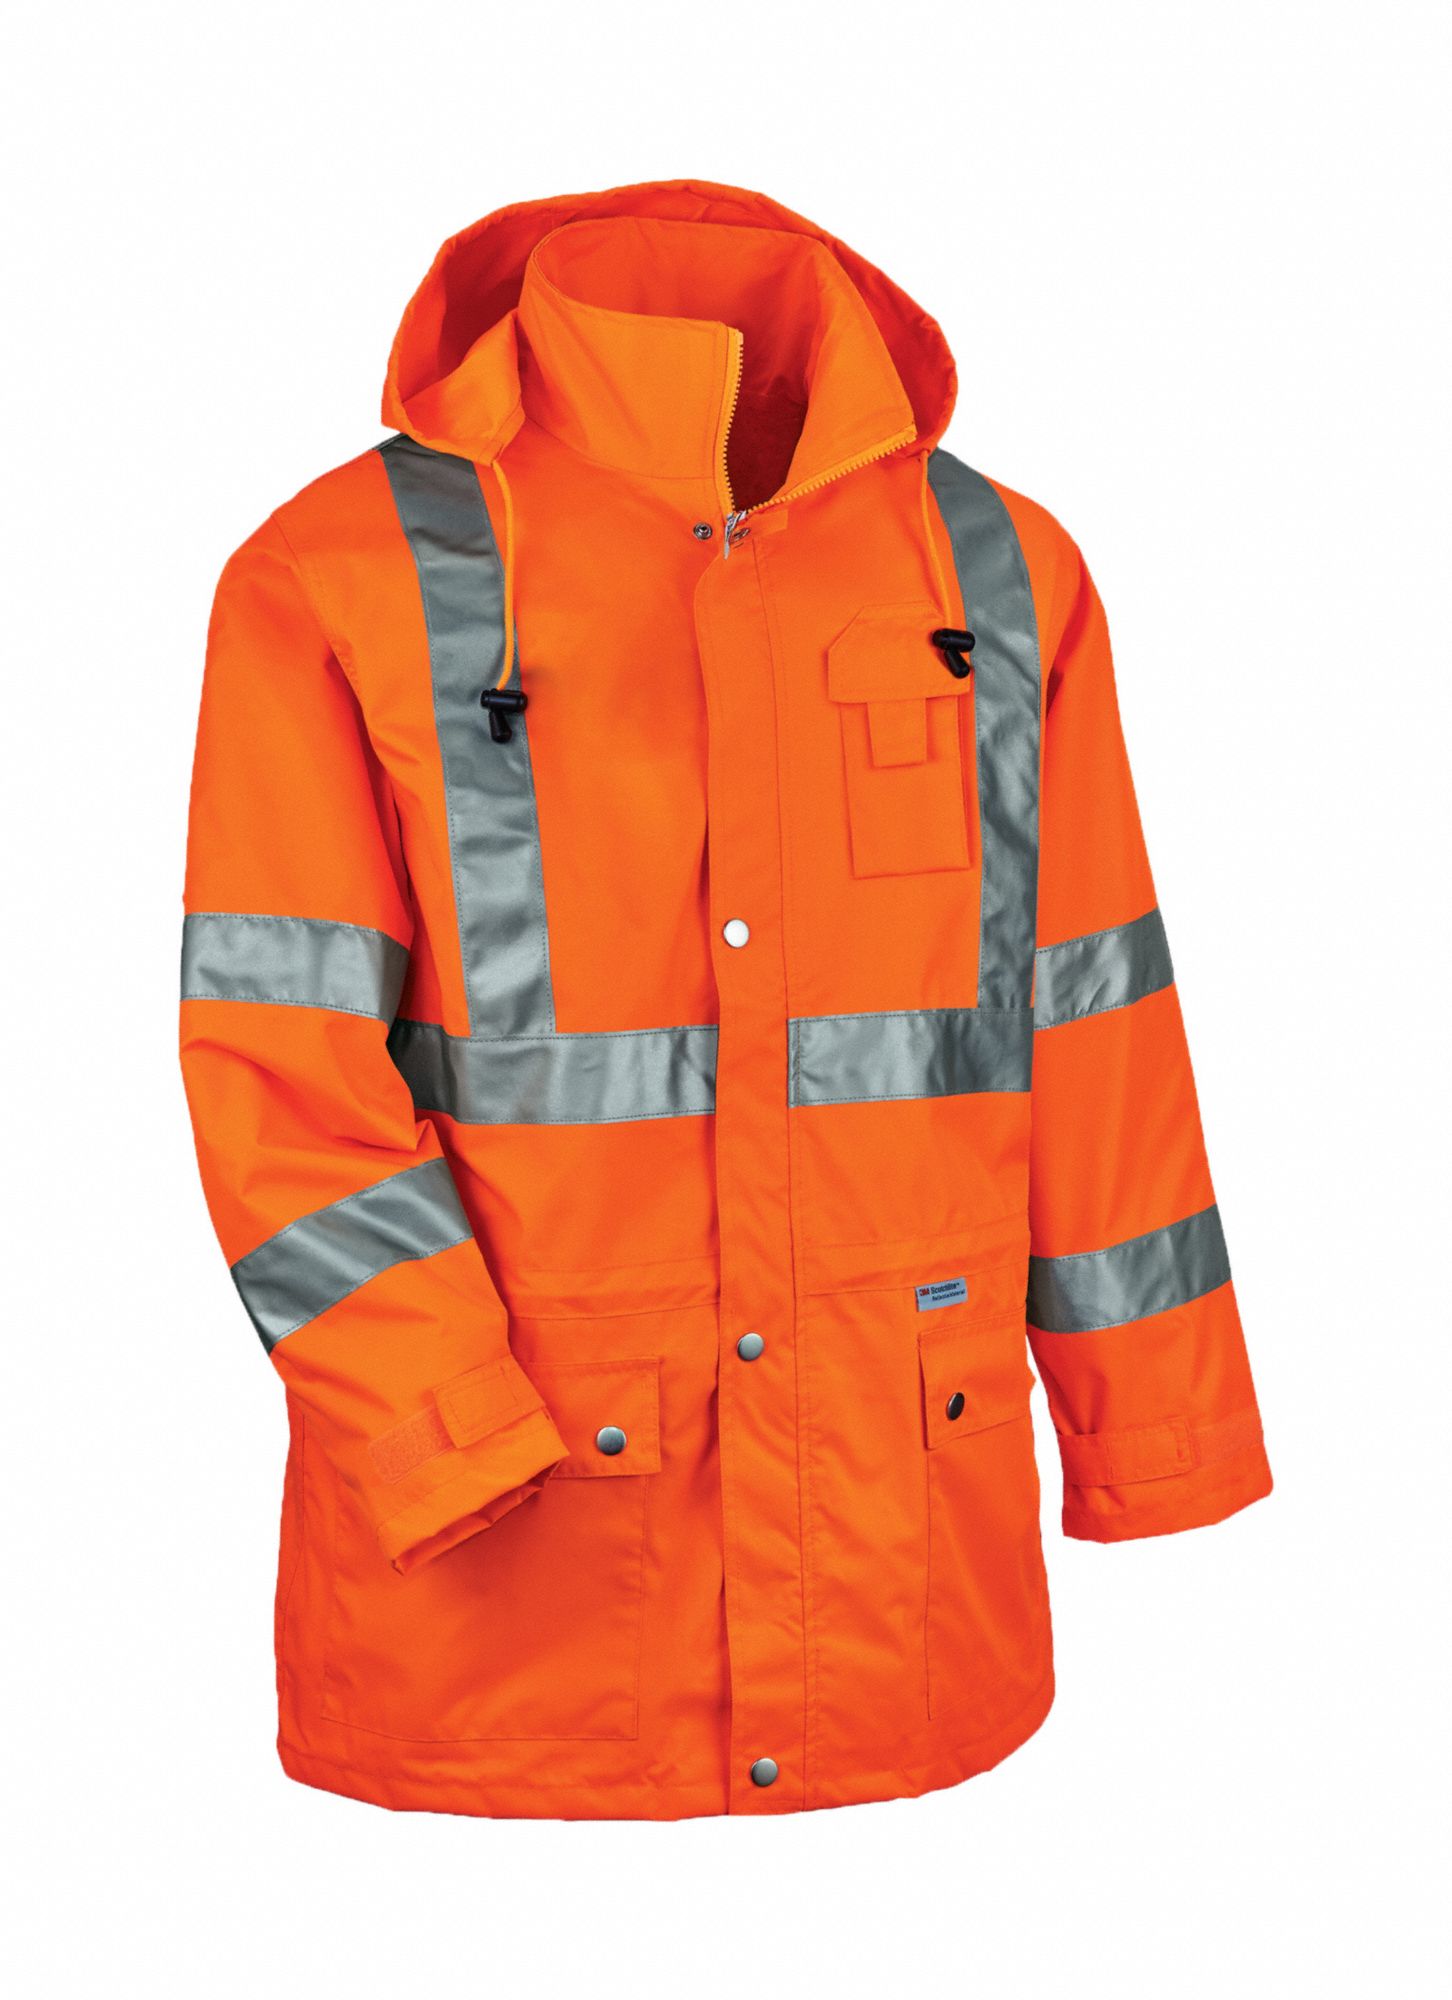 GLOWEAR BY ERGODYNE, XL, Orange, Rain Jacket with Hood - 2VGH4|8365 ...